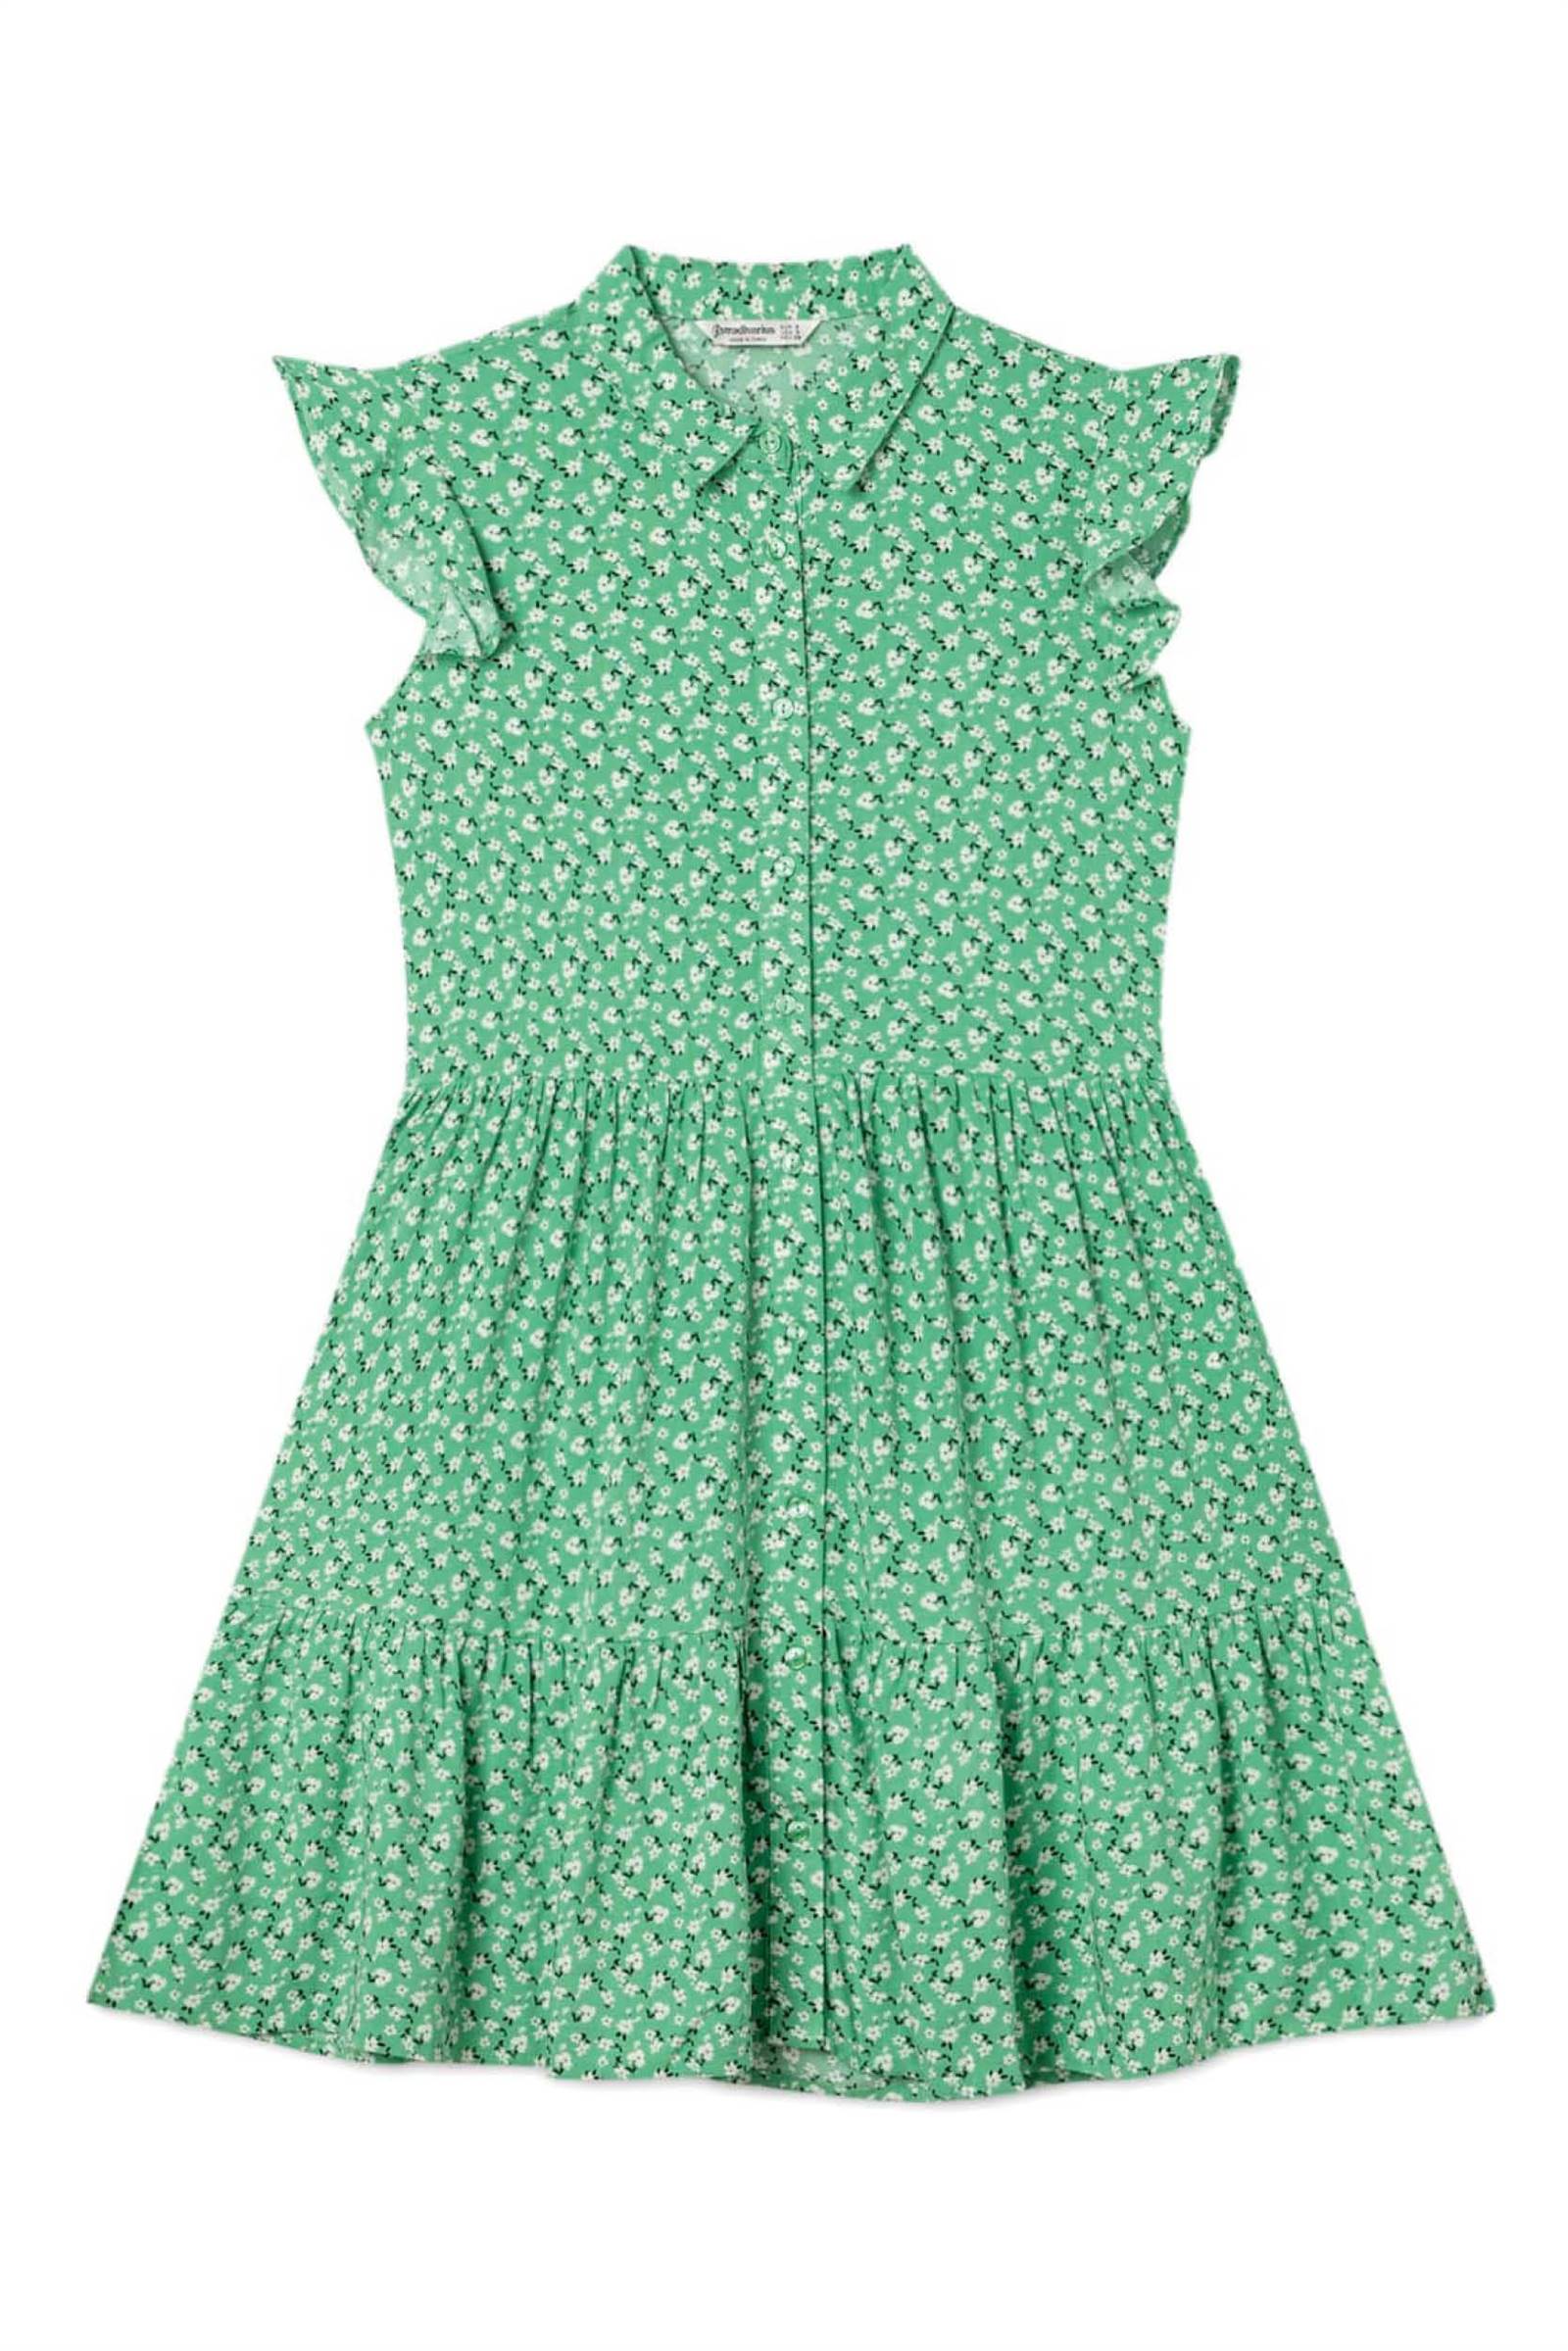 vestido stradivarius verano5. vestido stradivarius verano verde